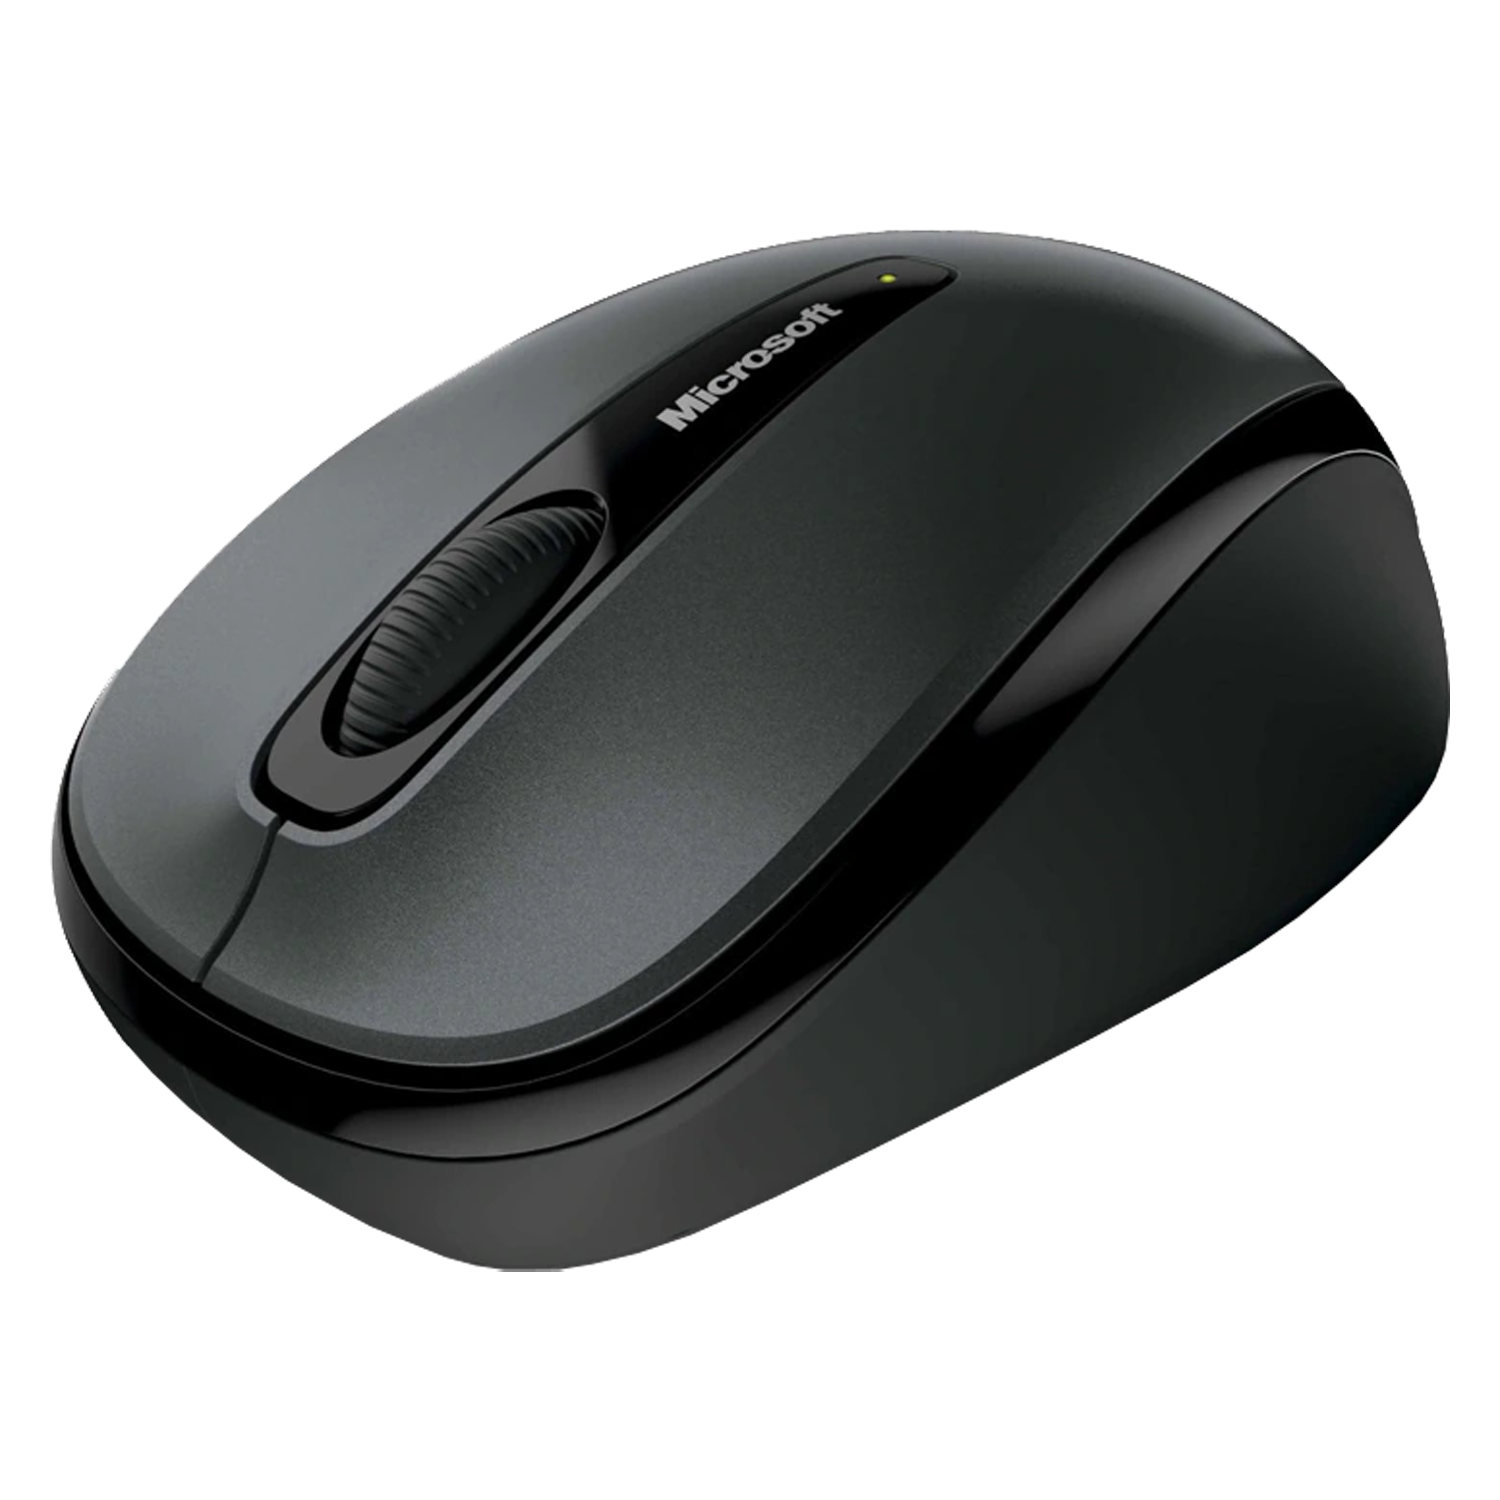 Mouse Microsoft GMF-00380 Sem Fio - Cinza e Preto